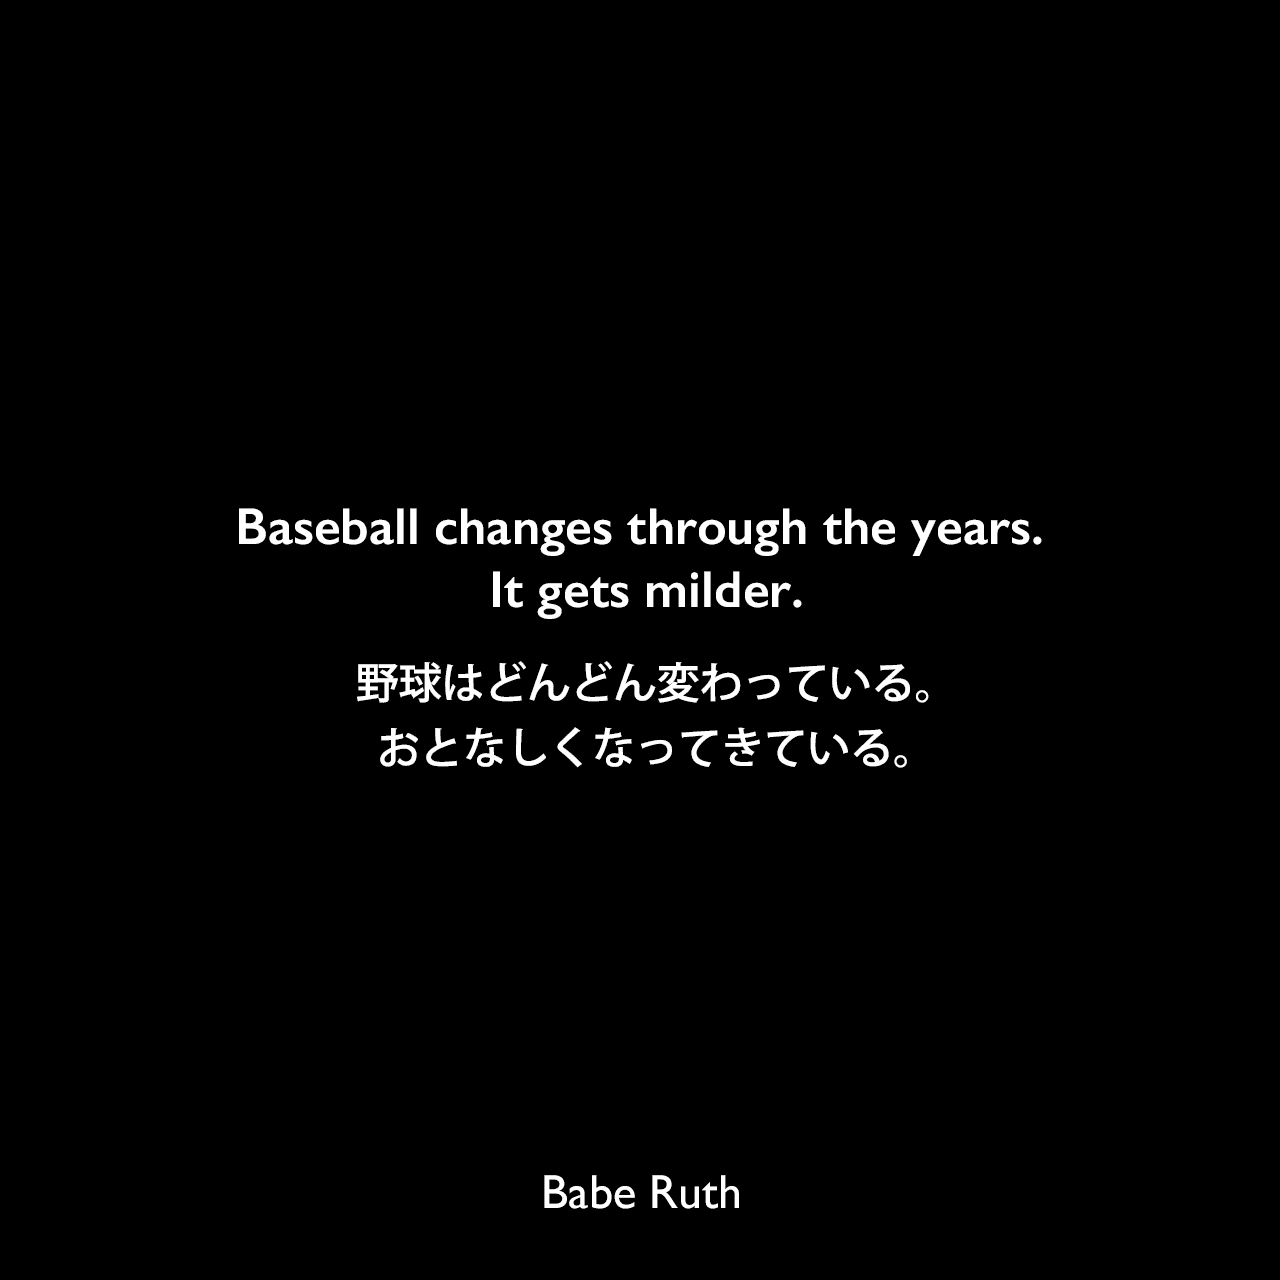 Baseball changes through the years. It gets milder.野球はどんどん変わっている。おとなしくなってきている。Babe Ruth